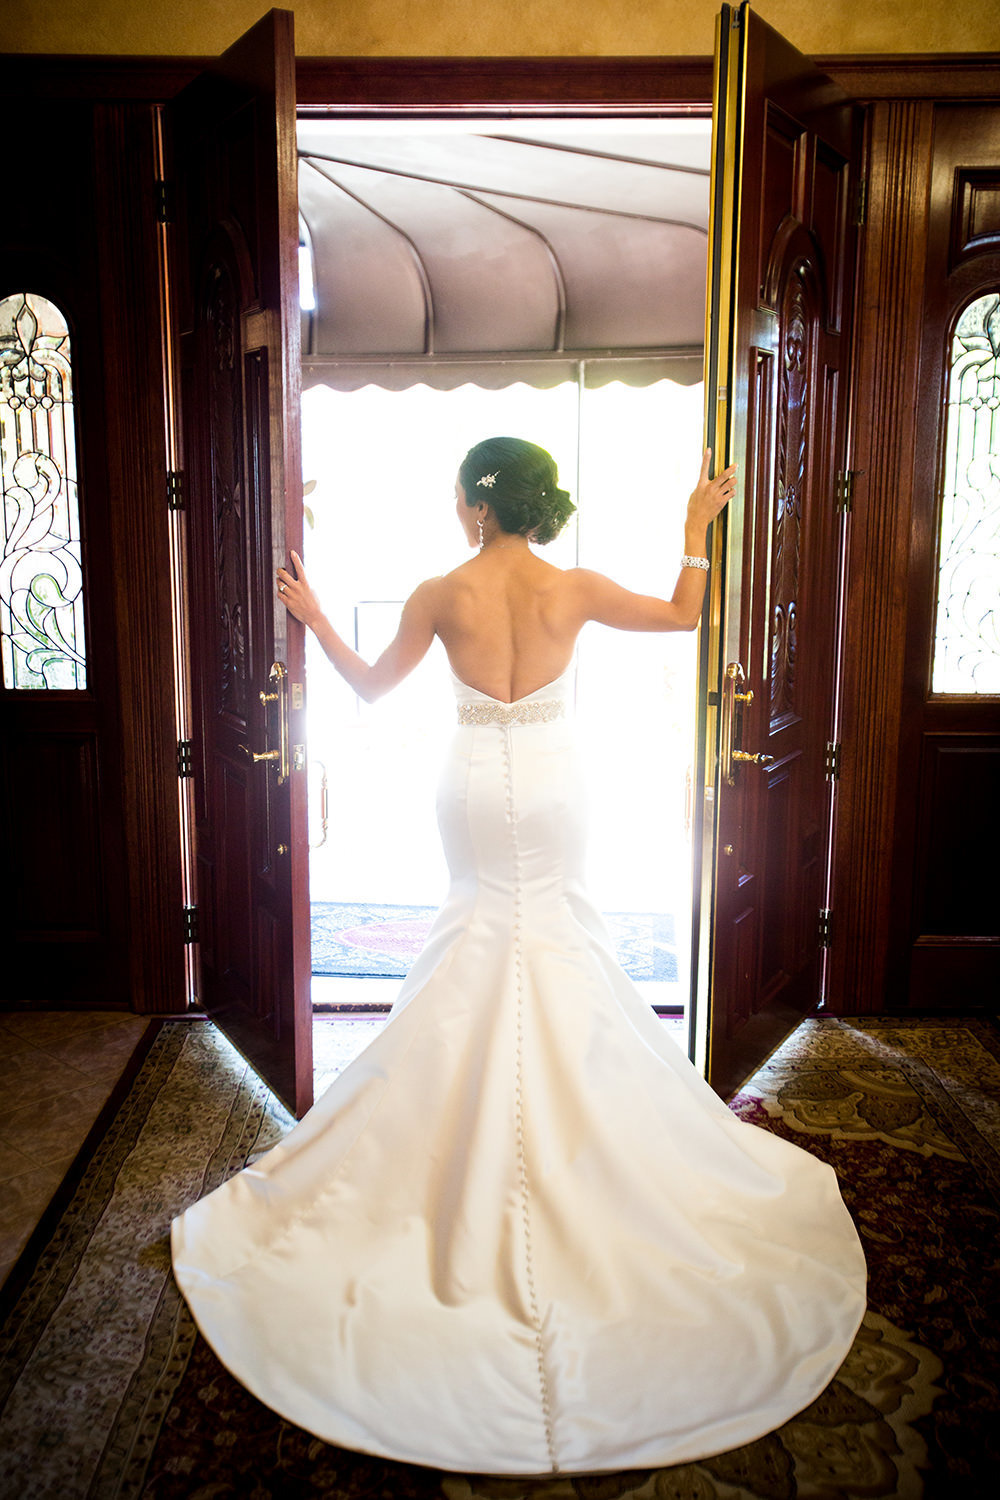 dress shot of bride looking out he doors